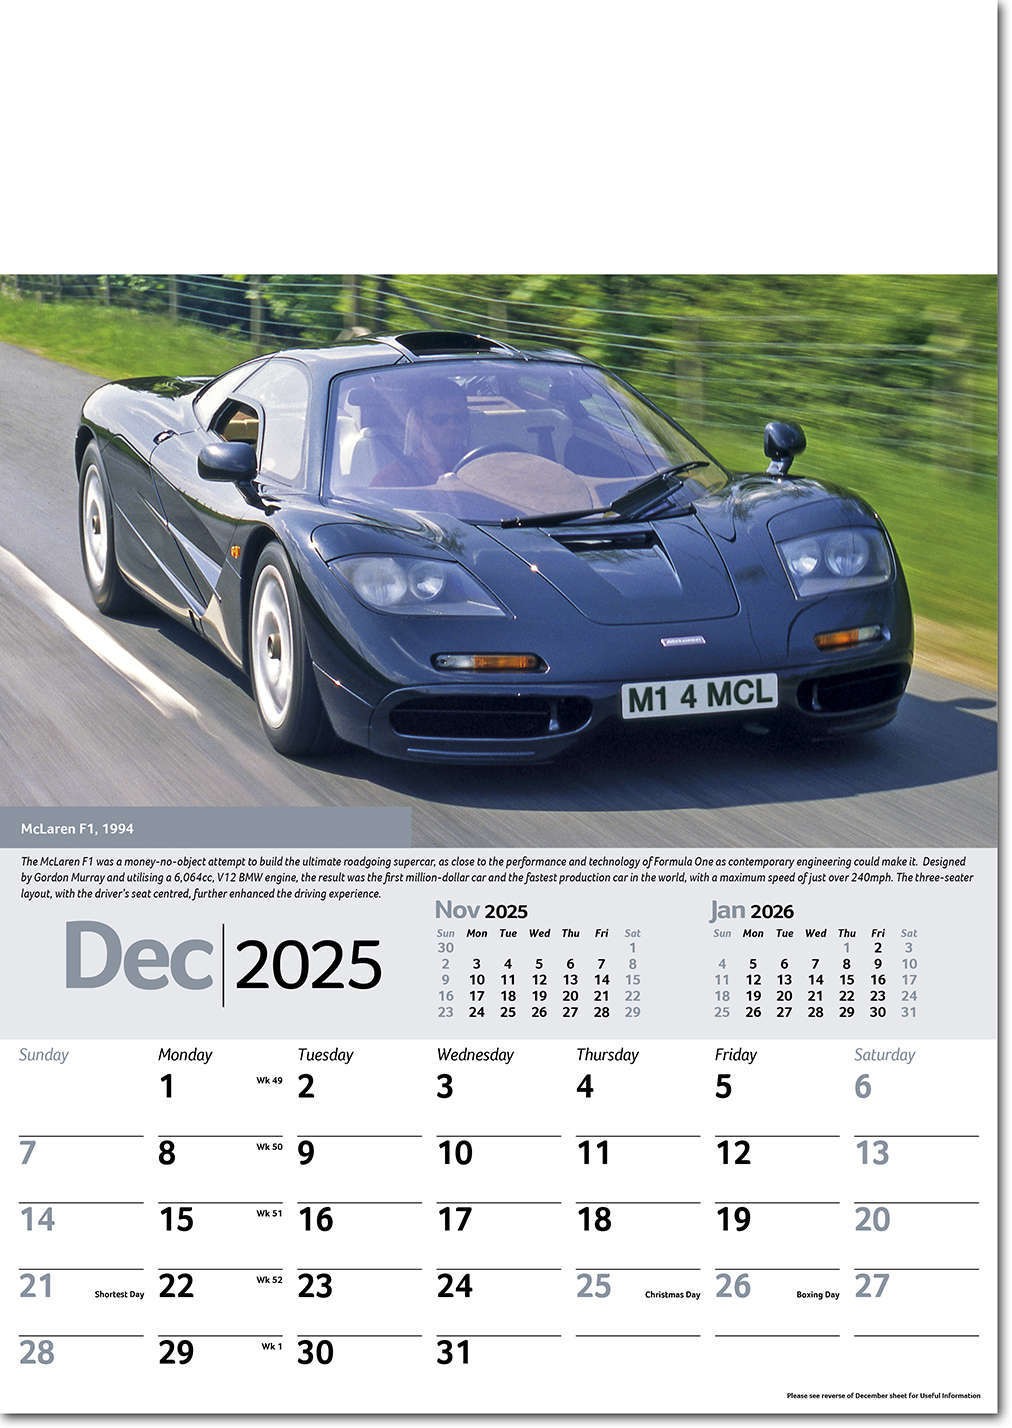 Collectors Cars Calendar